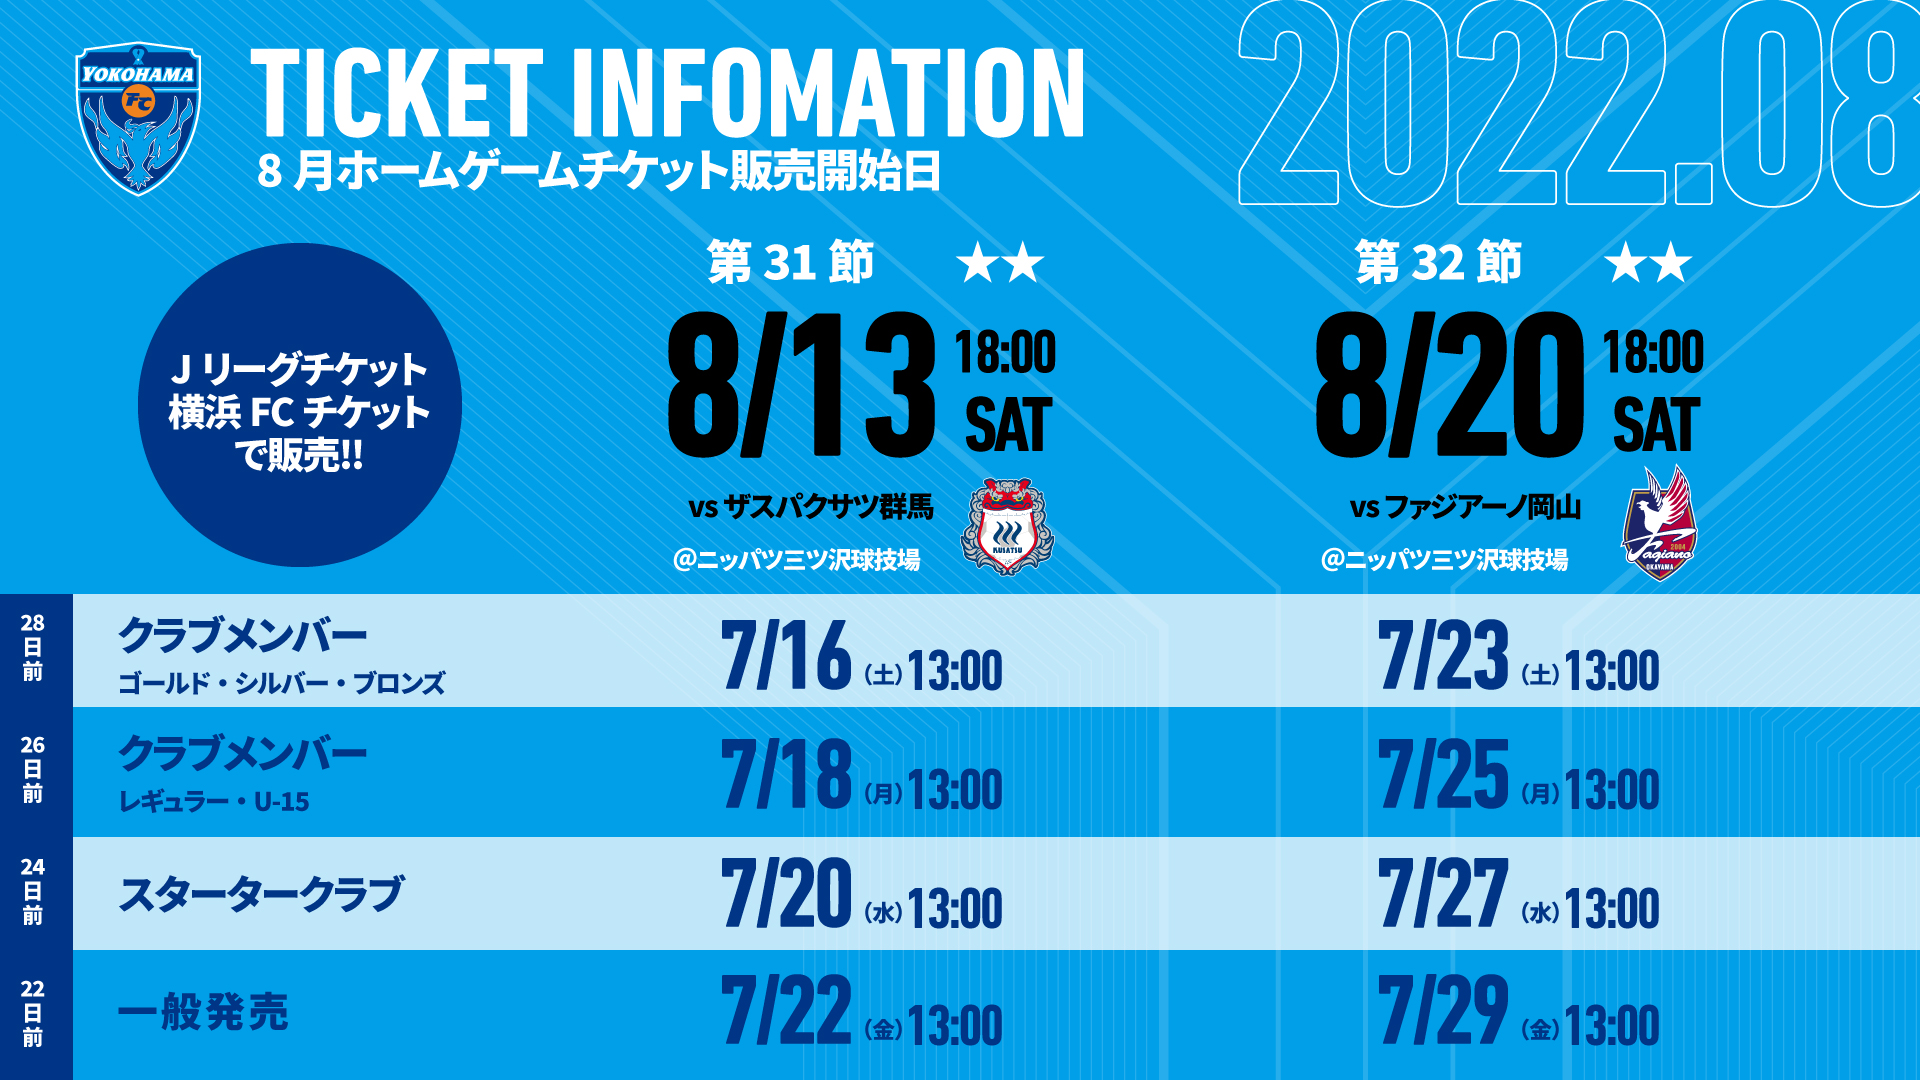 8月開催ホームゲームチケットに関するお知らせ 横浜fcオフィシャルウェブサイト